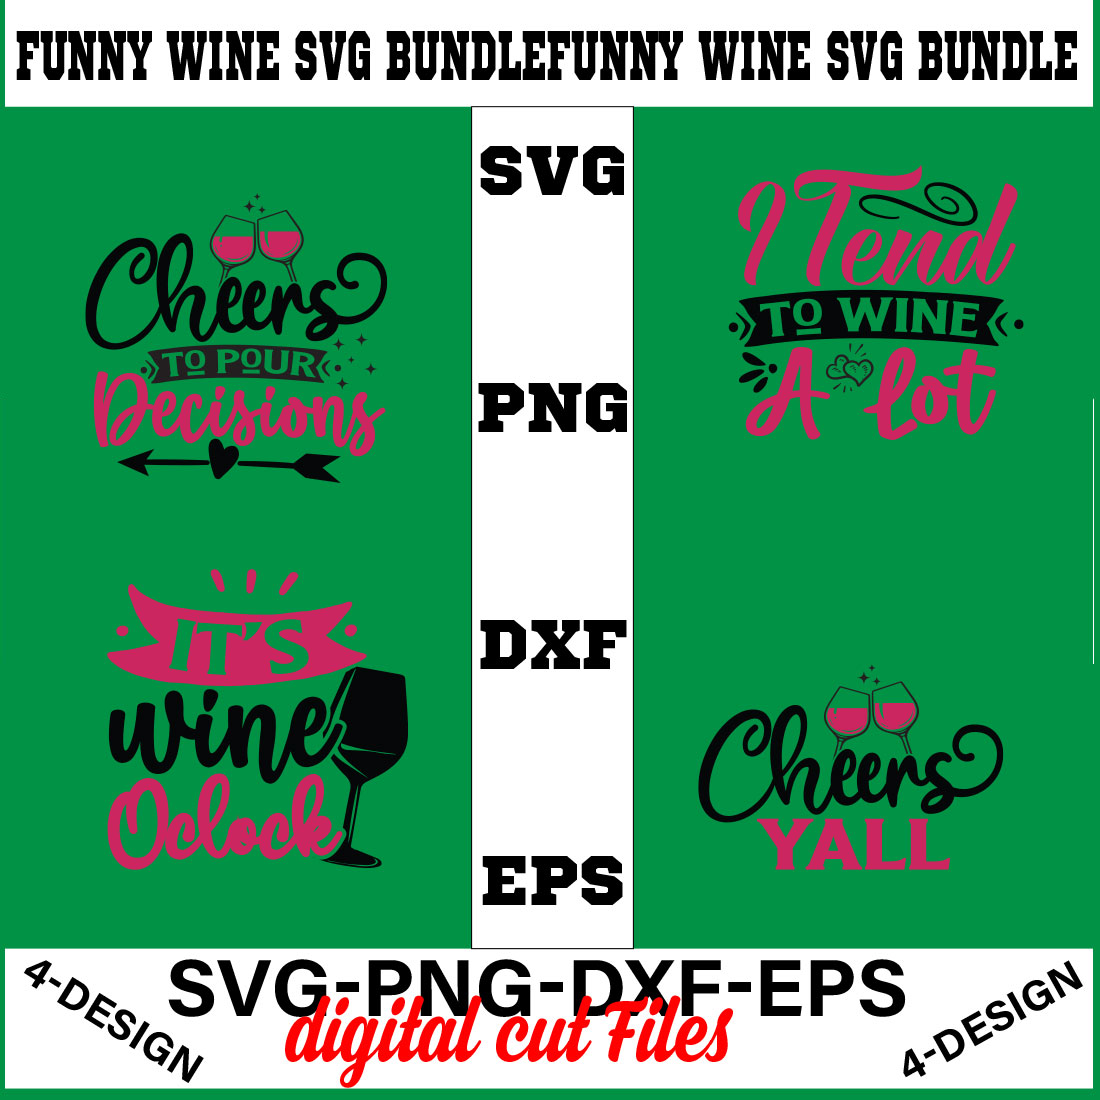 Funny Svg T-shirt Design Bundle Volume-06 cover image.